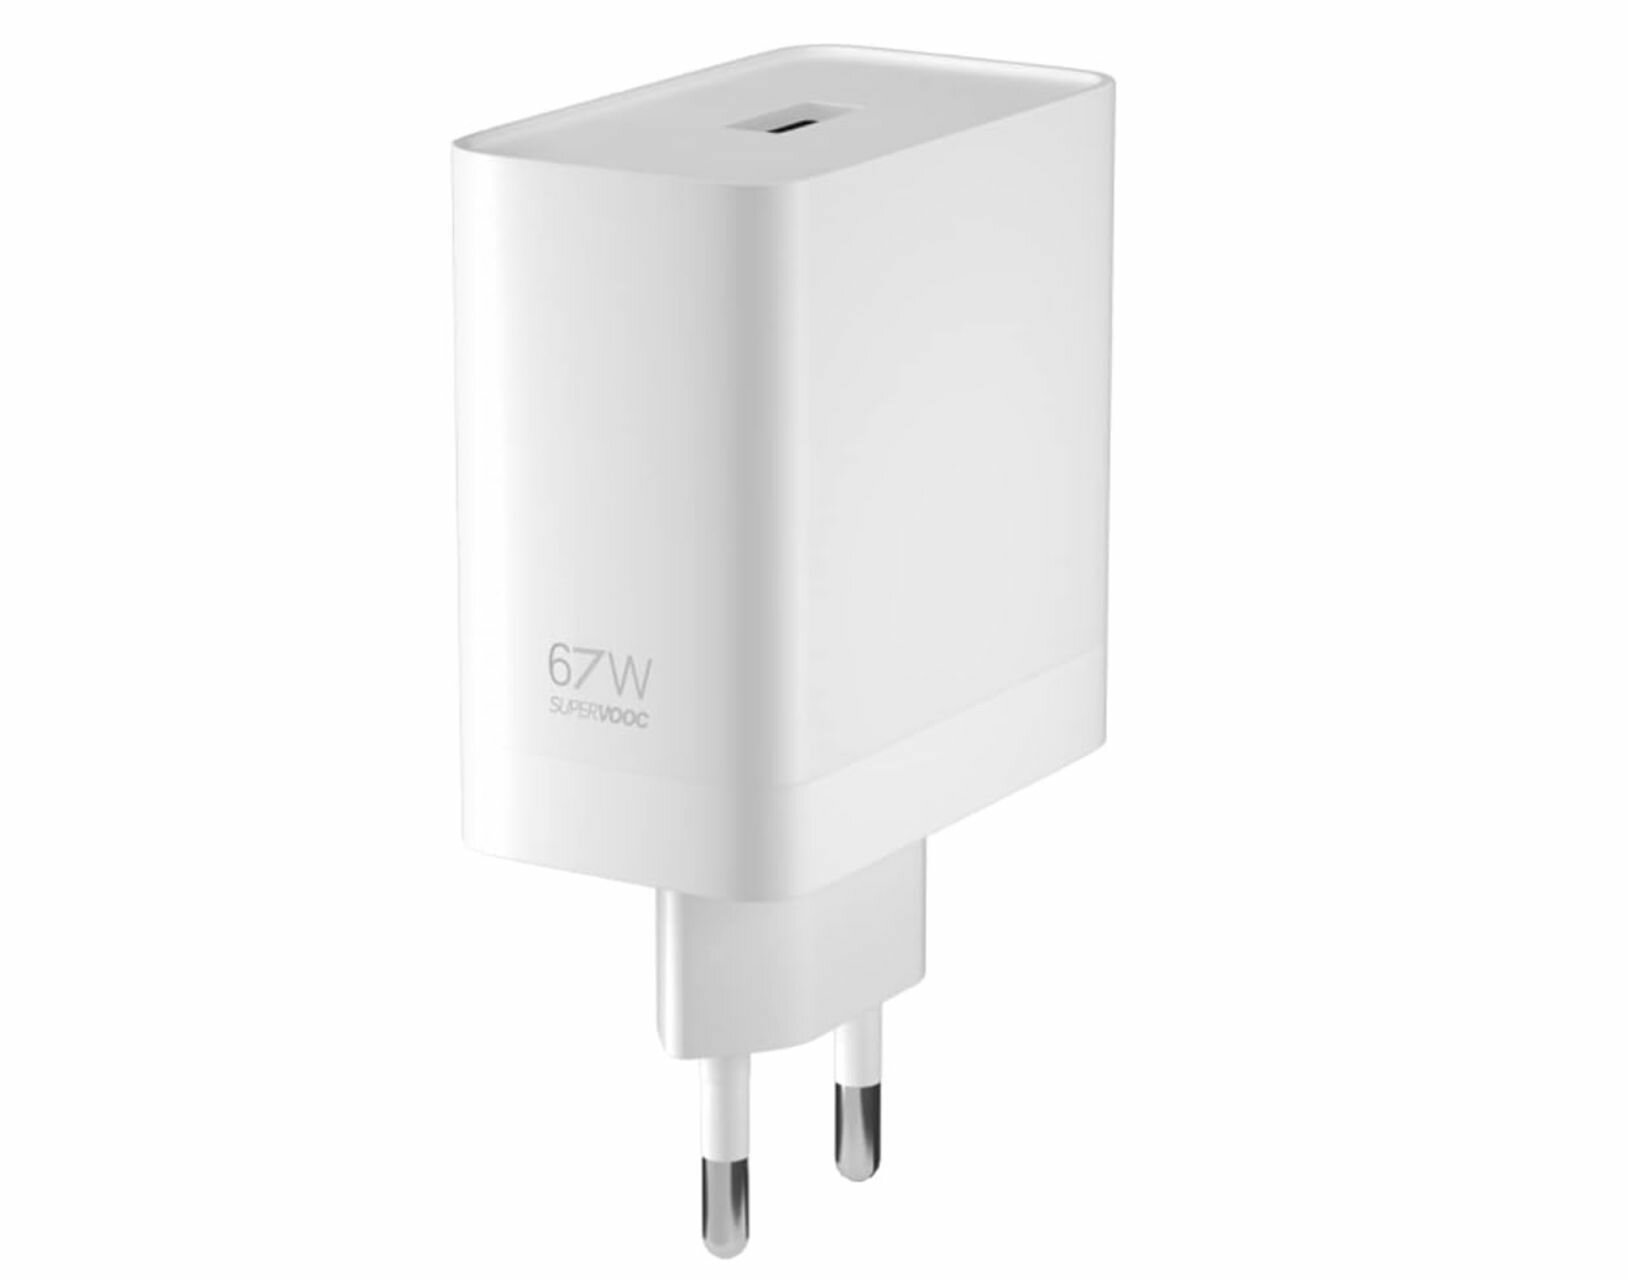 Сетевое зарядное устройство для Realme и Oppo VCB7CAEH SUPERVOOC с USB входом 67W (цвет: Белый),(без упаковки)